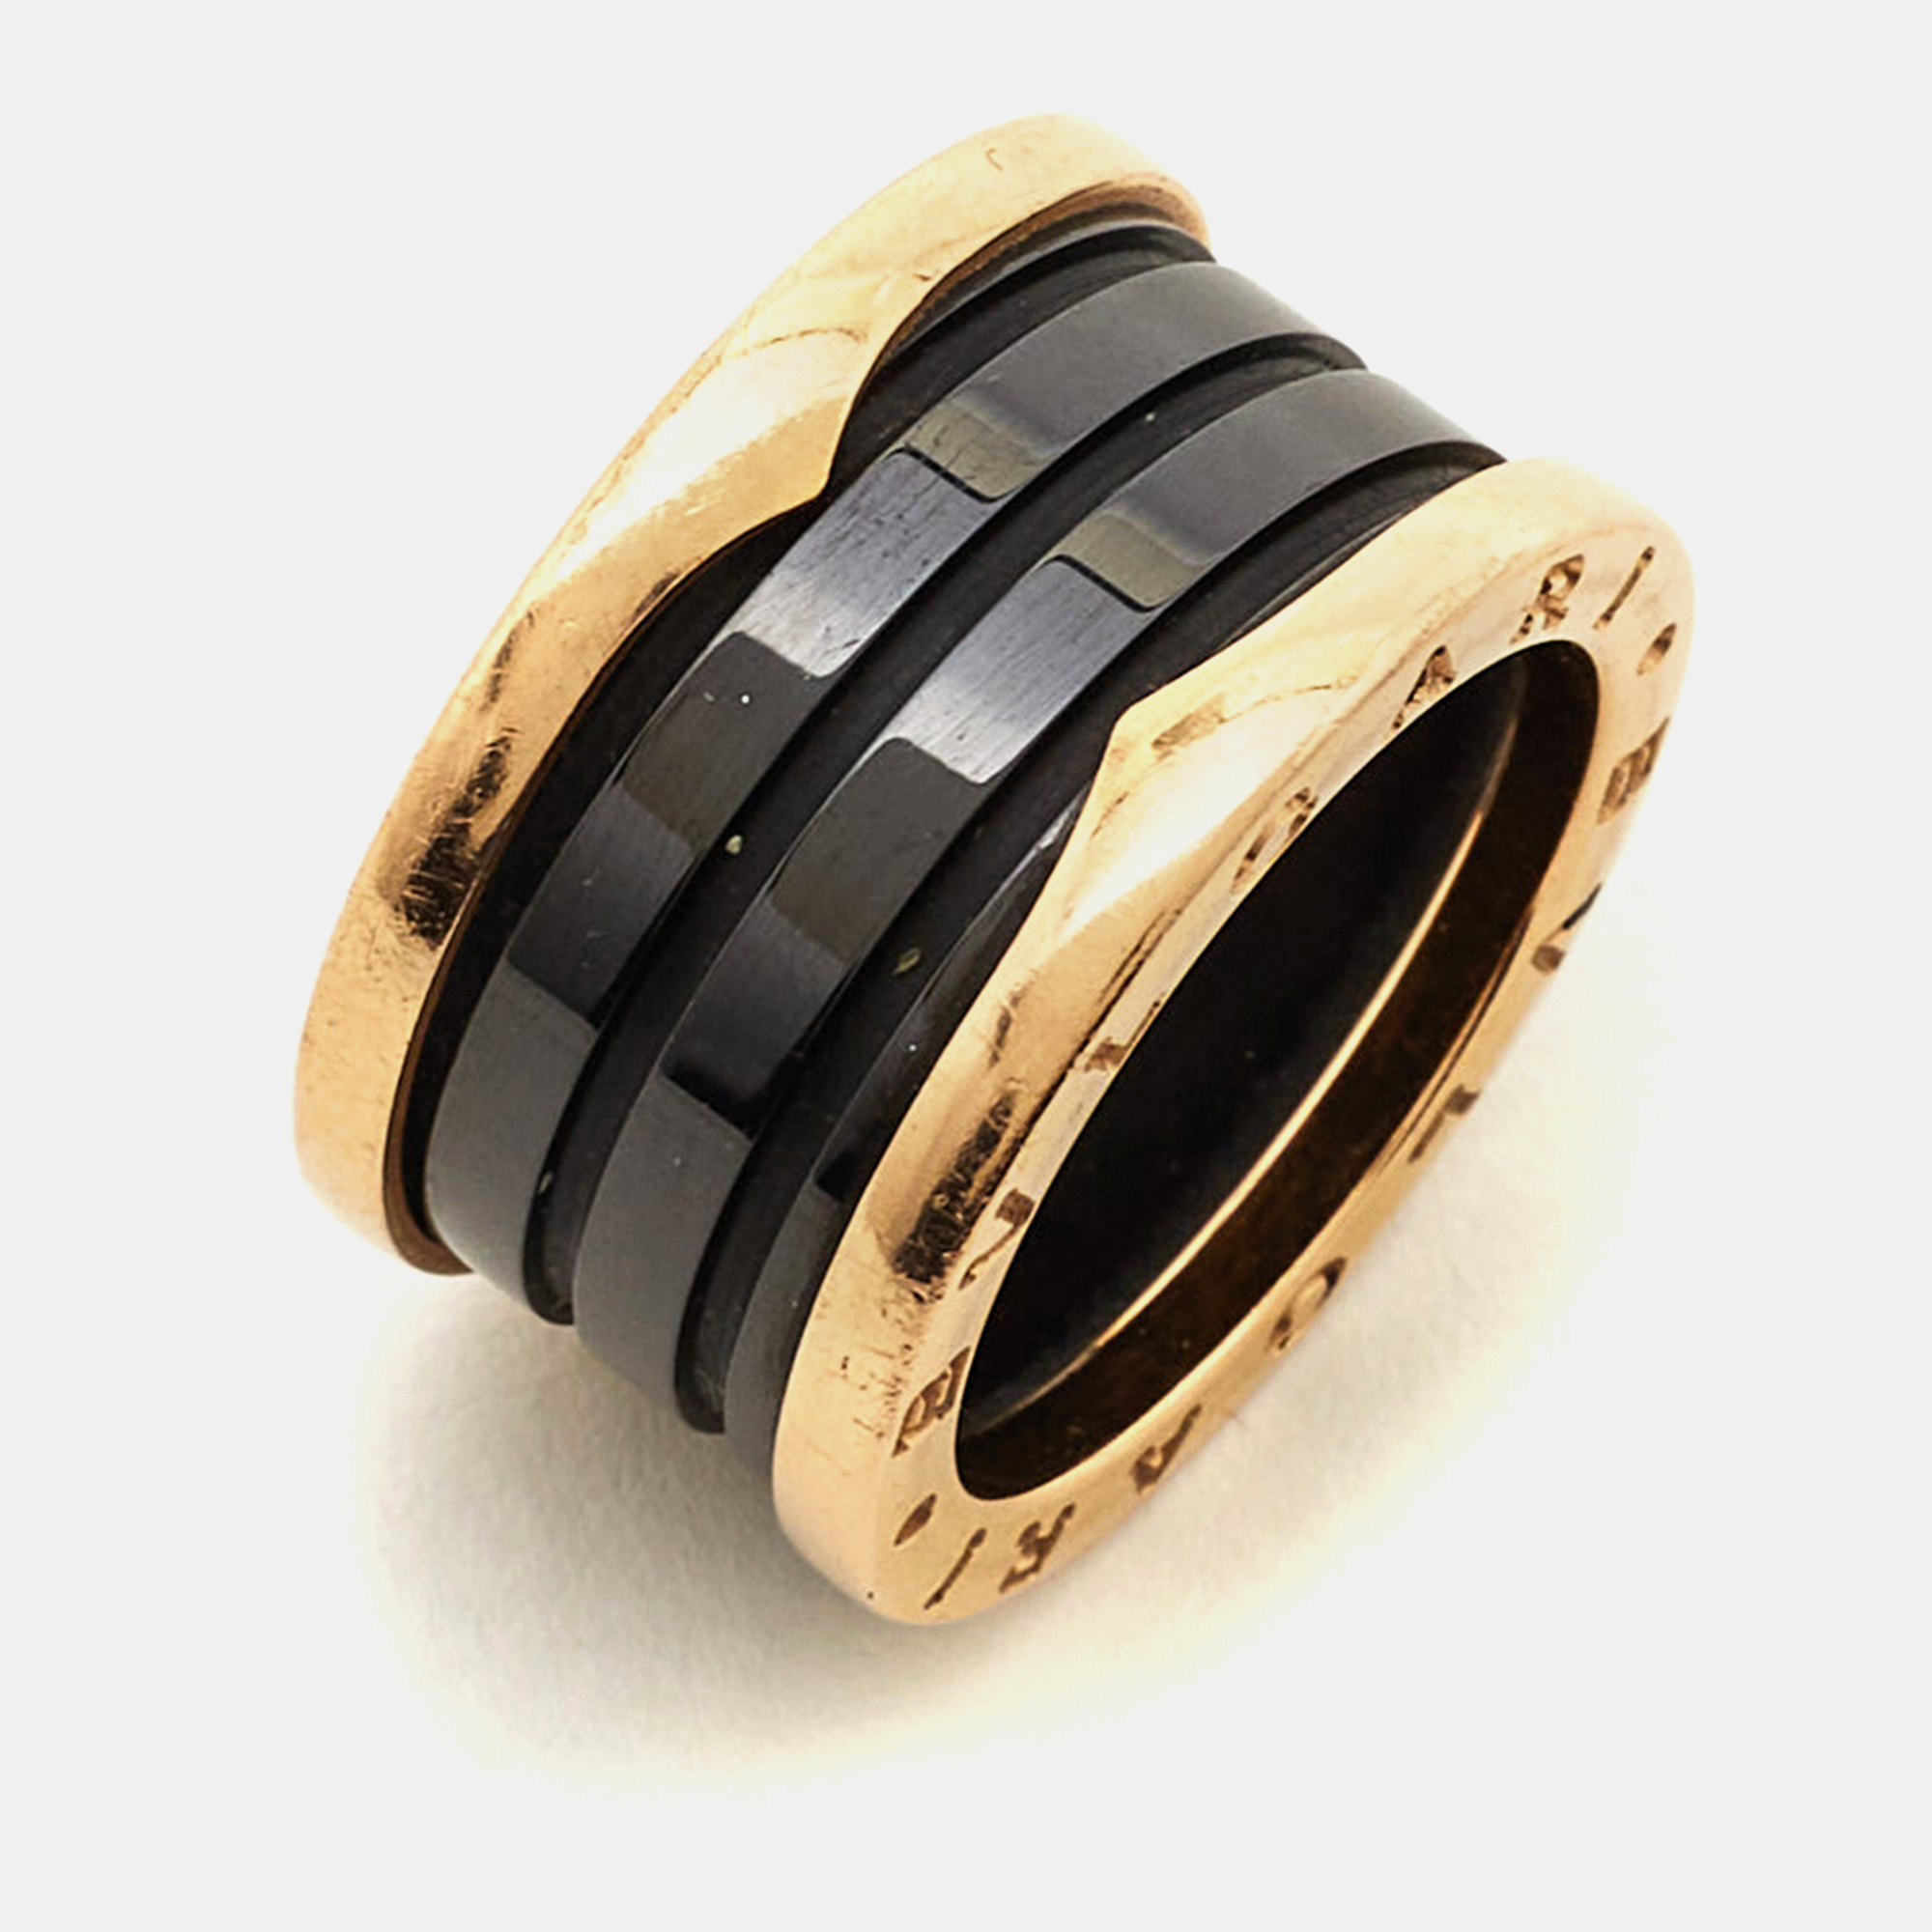 Bvlgari B.Zero1 4-Band Ceramic 18k Rose Gold Ring Size 52